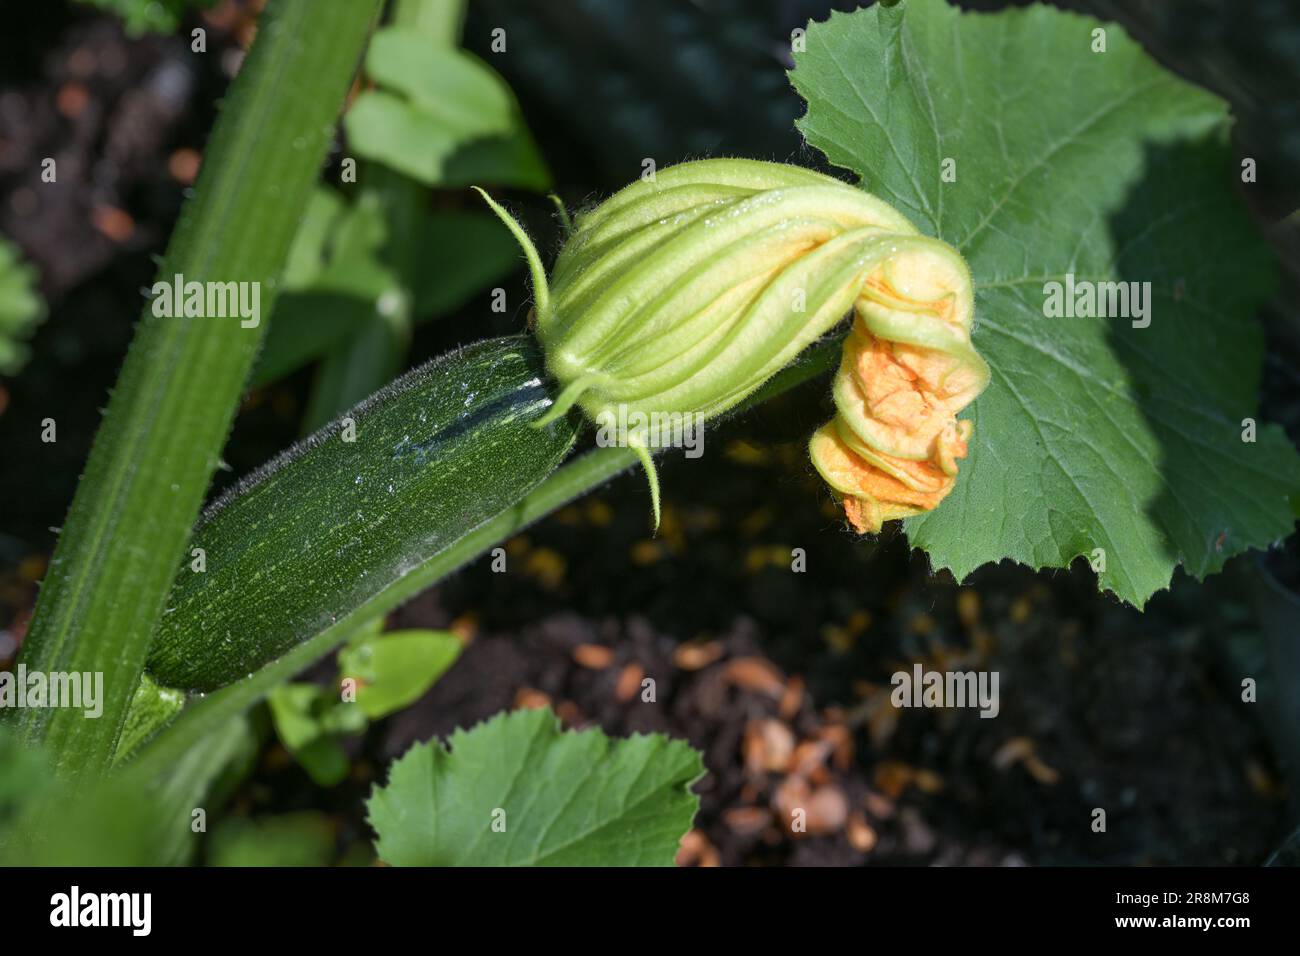 Zucchine verdi con fiori d'arancio, coltivate nell'orto per alimenti sani e biologici, spazio copia, focus selezionato, profondità ridotta Foto Stock